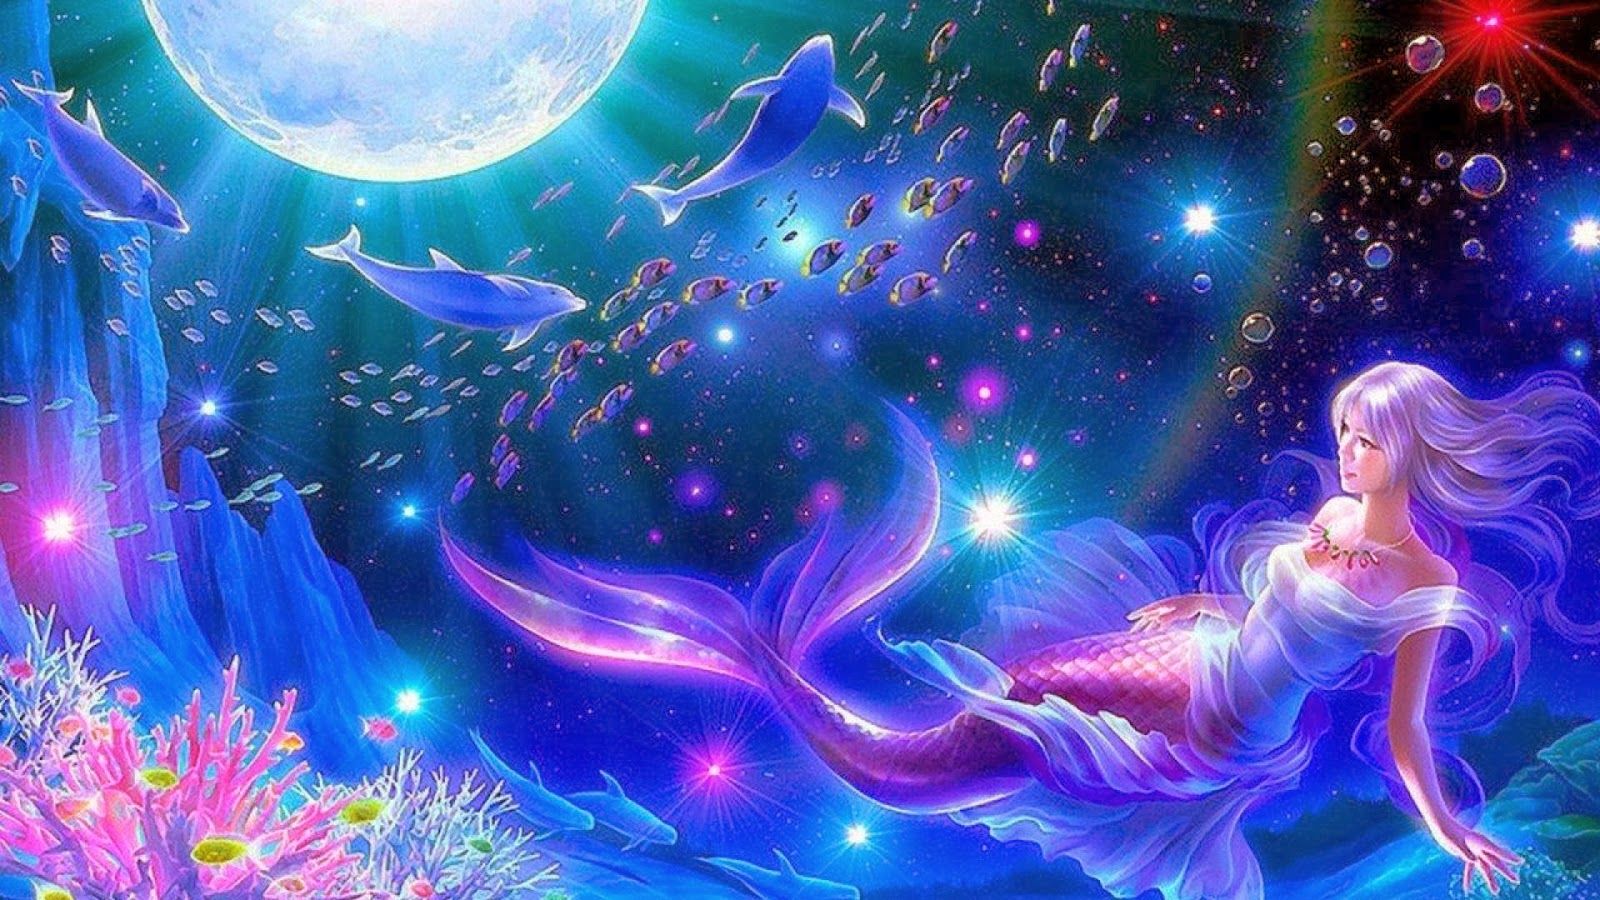 Mermaid wallpaper with a beautiful mermaid in the sea - Mermaid